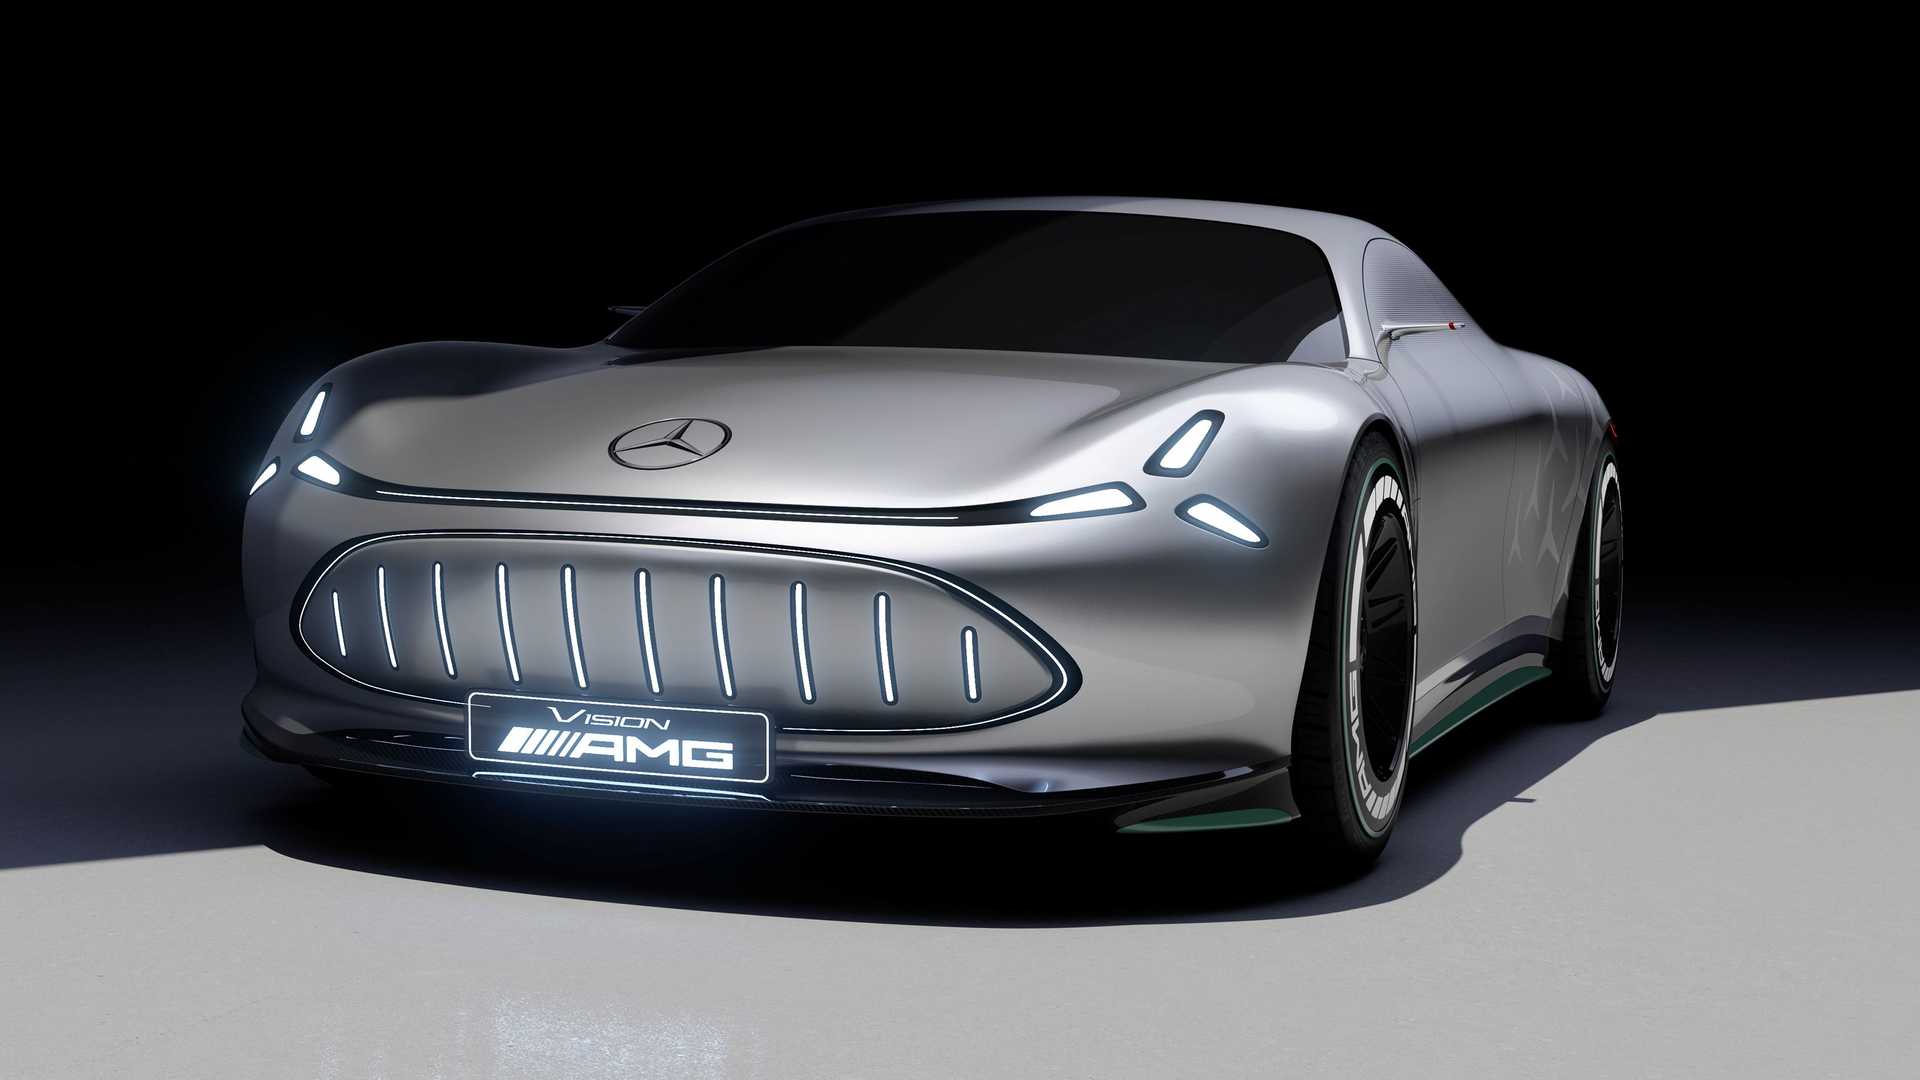 جدیدترین‌ کانسپت مرسدس بنز Vision AMG معرفی شد؛ تصویری متفاوت از خودروهای اسپرت آینده